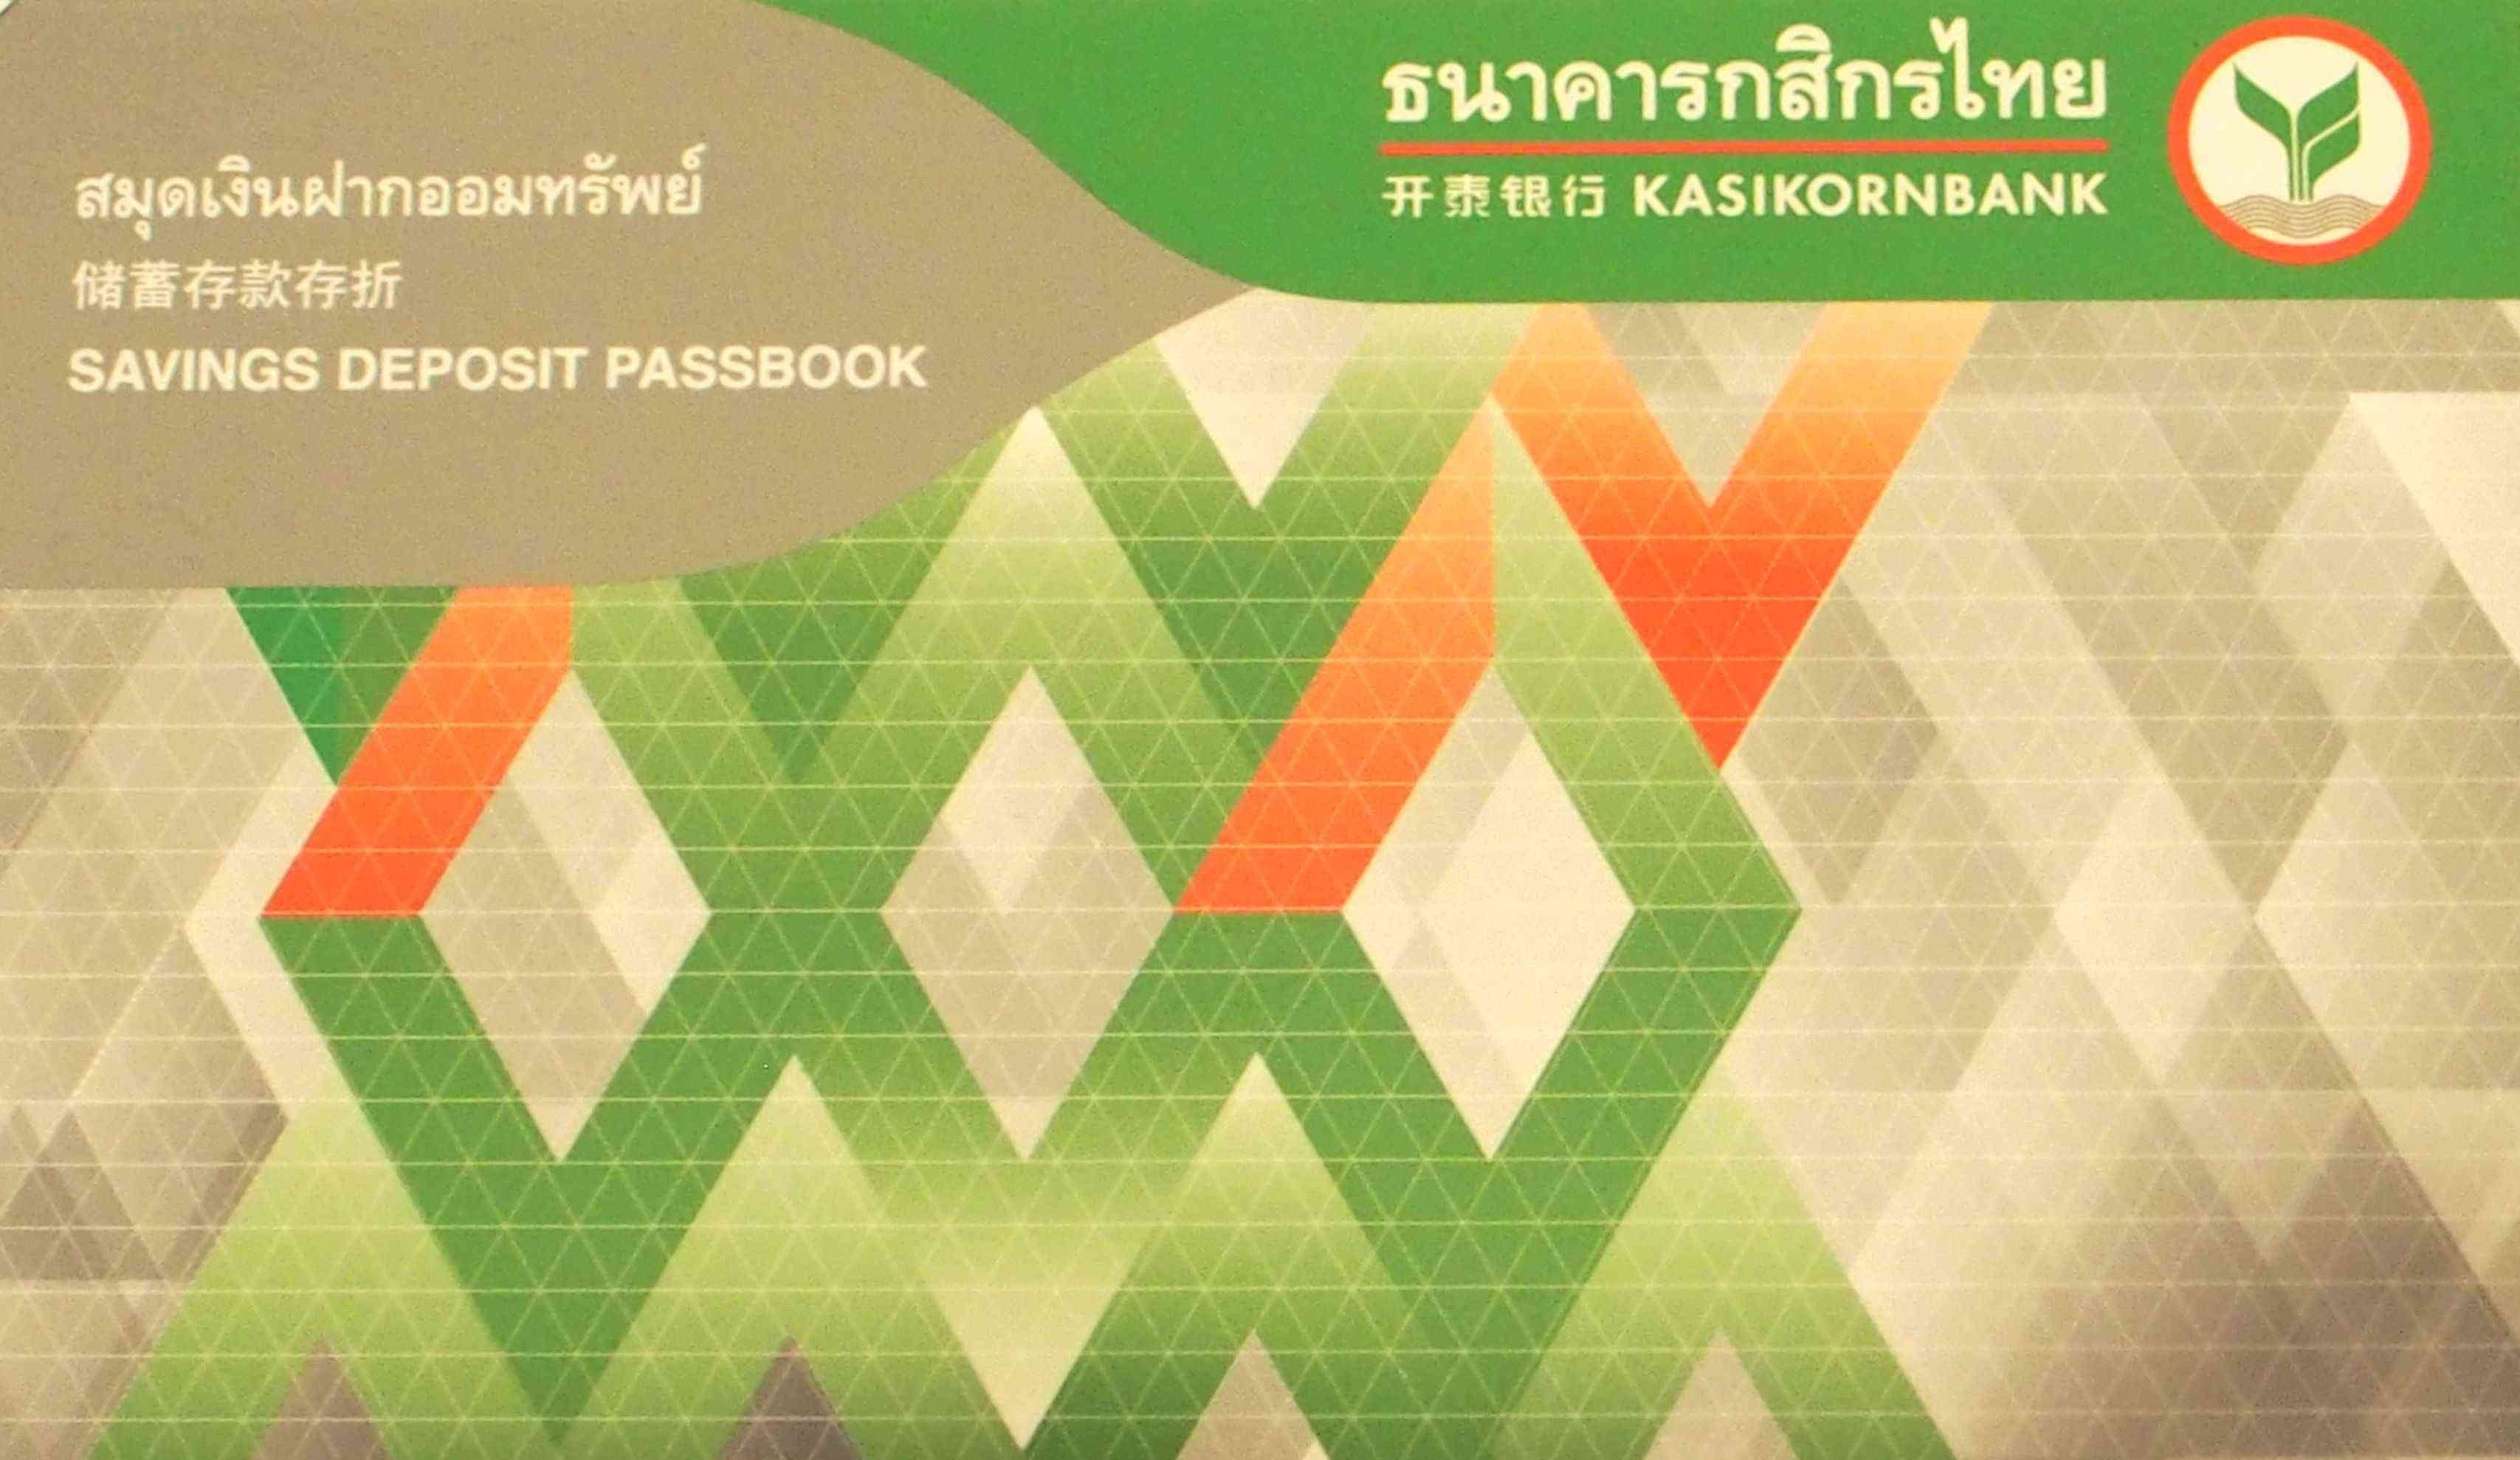 海外銀行 タイでパスポートのみ ノービザ で口座開設できる銀行 Enjoy Thailand エンジョイタイランド公式サイト